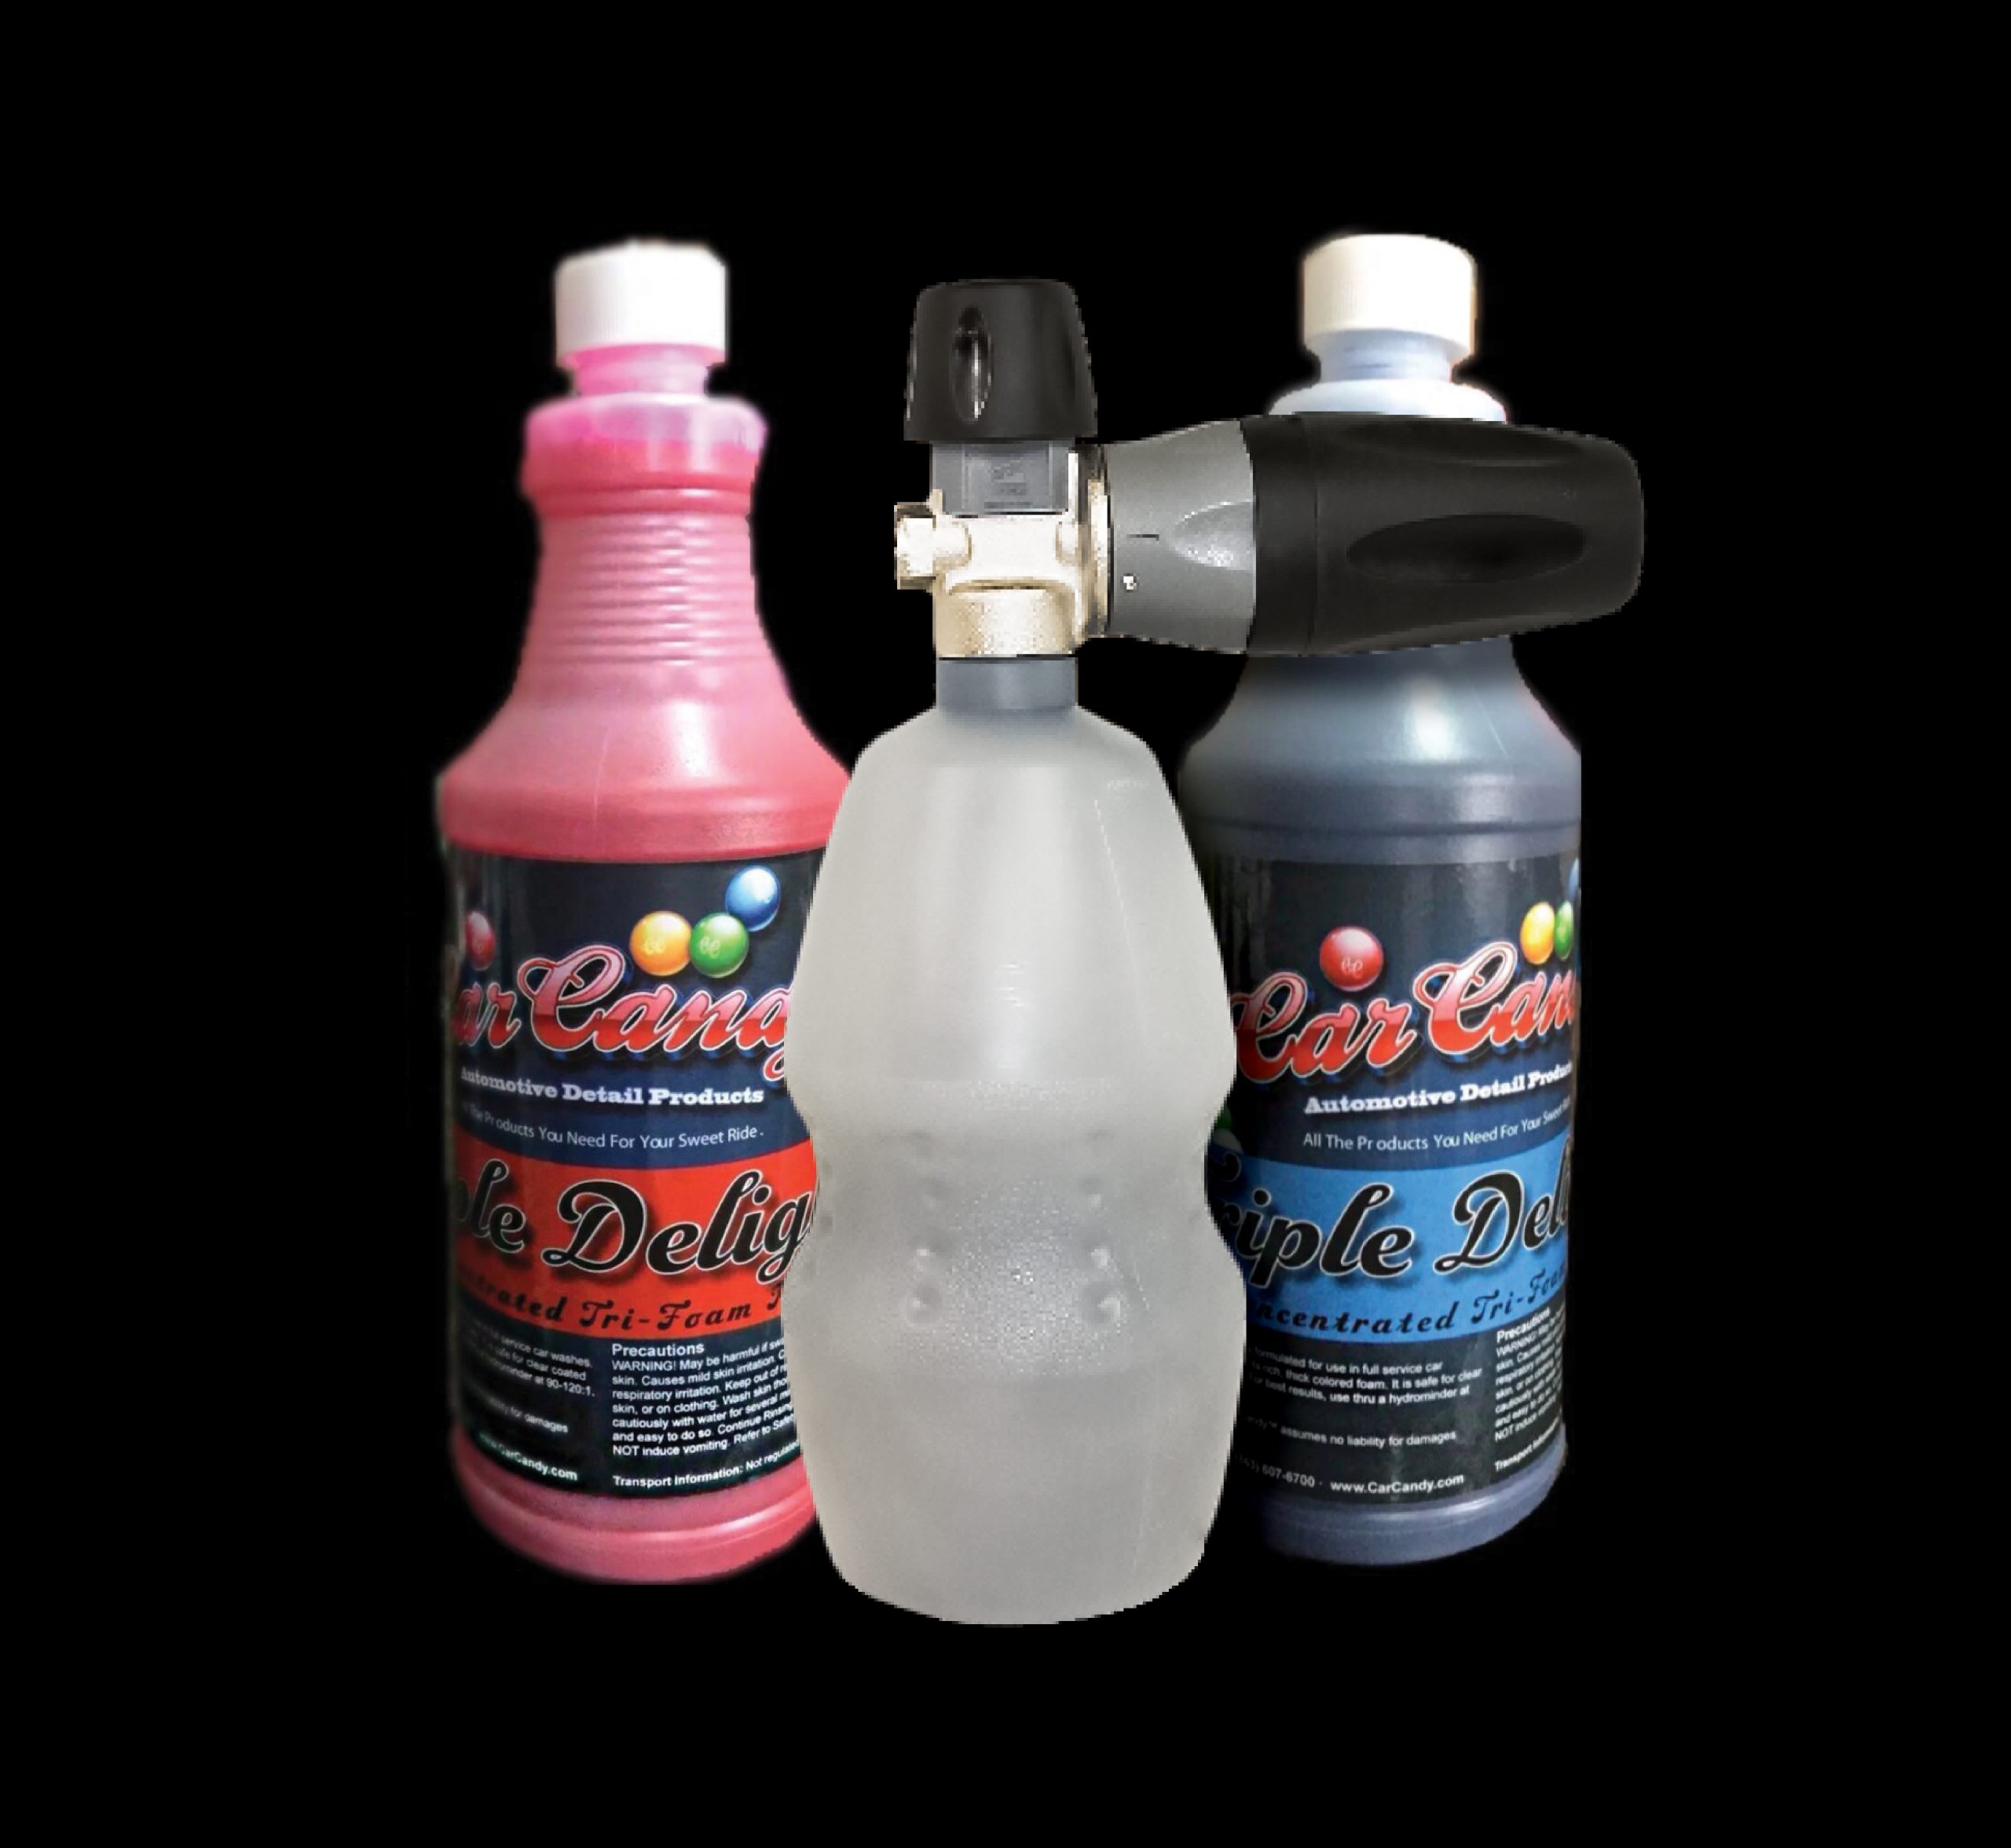 Car Candy - CandyCoat Enhancer Sio2 Ceramic Coating Spray-16 Oz